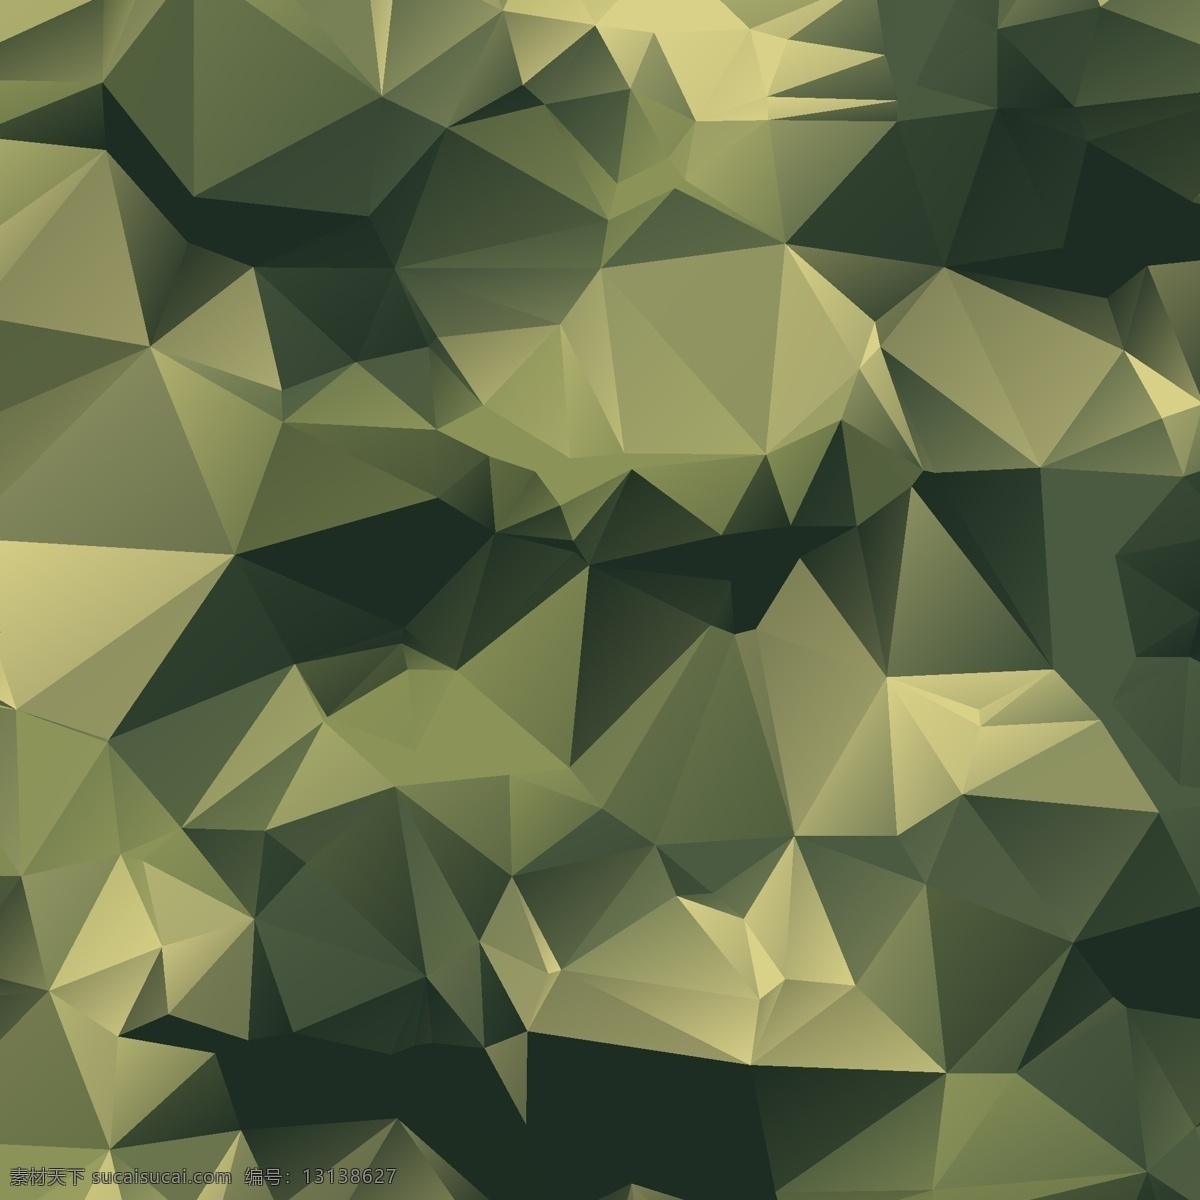 多边形 迷彩 背景 抽象 纹理 几何 绿色 军队 军事 士兵 制服 伪装 三角形 游击队 战时